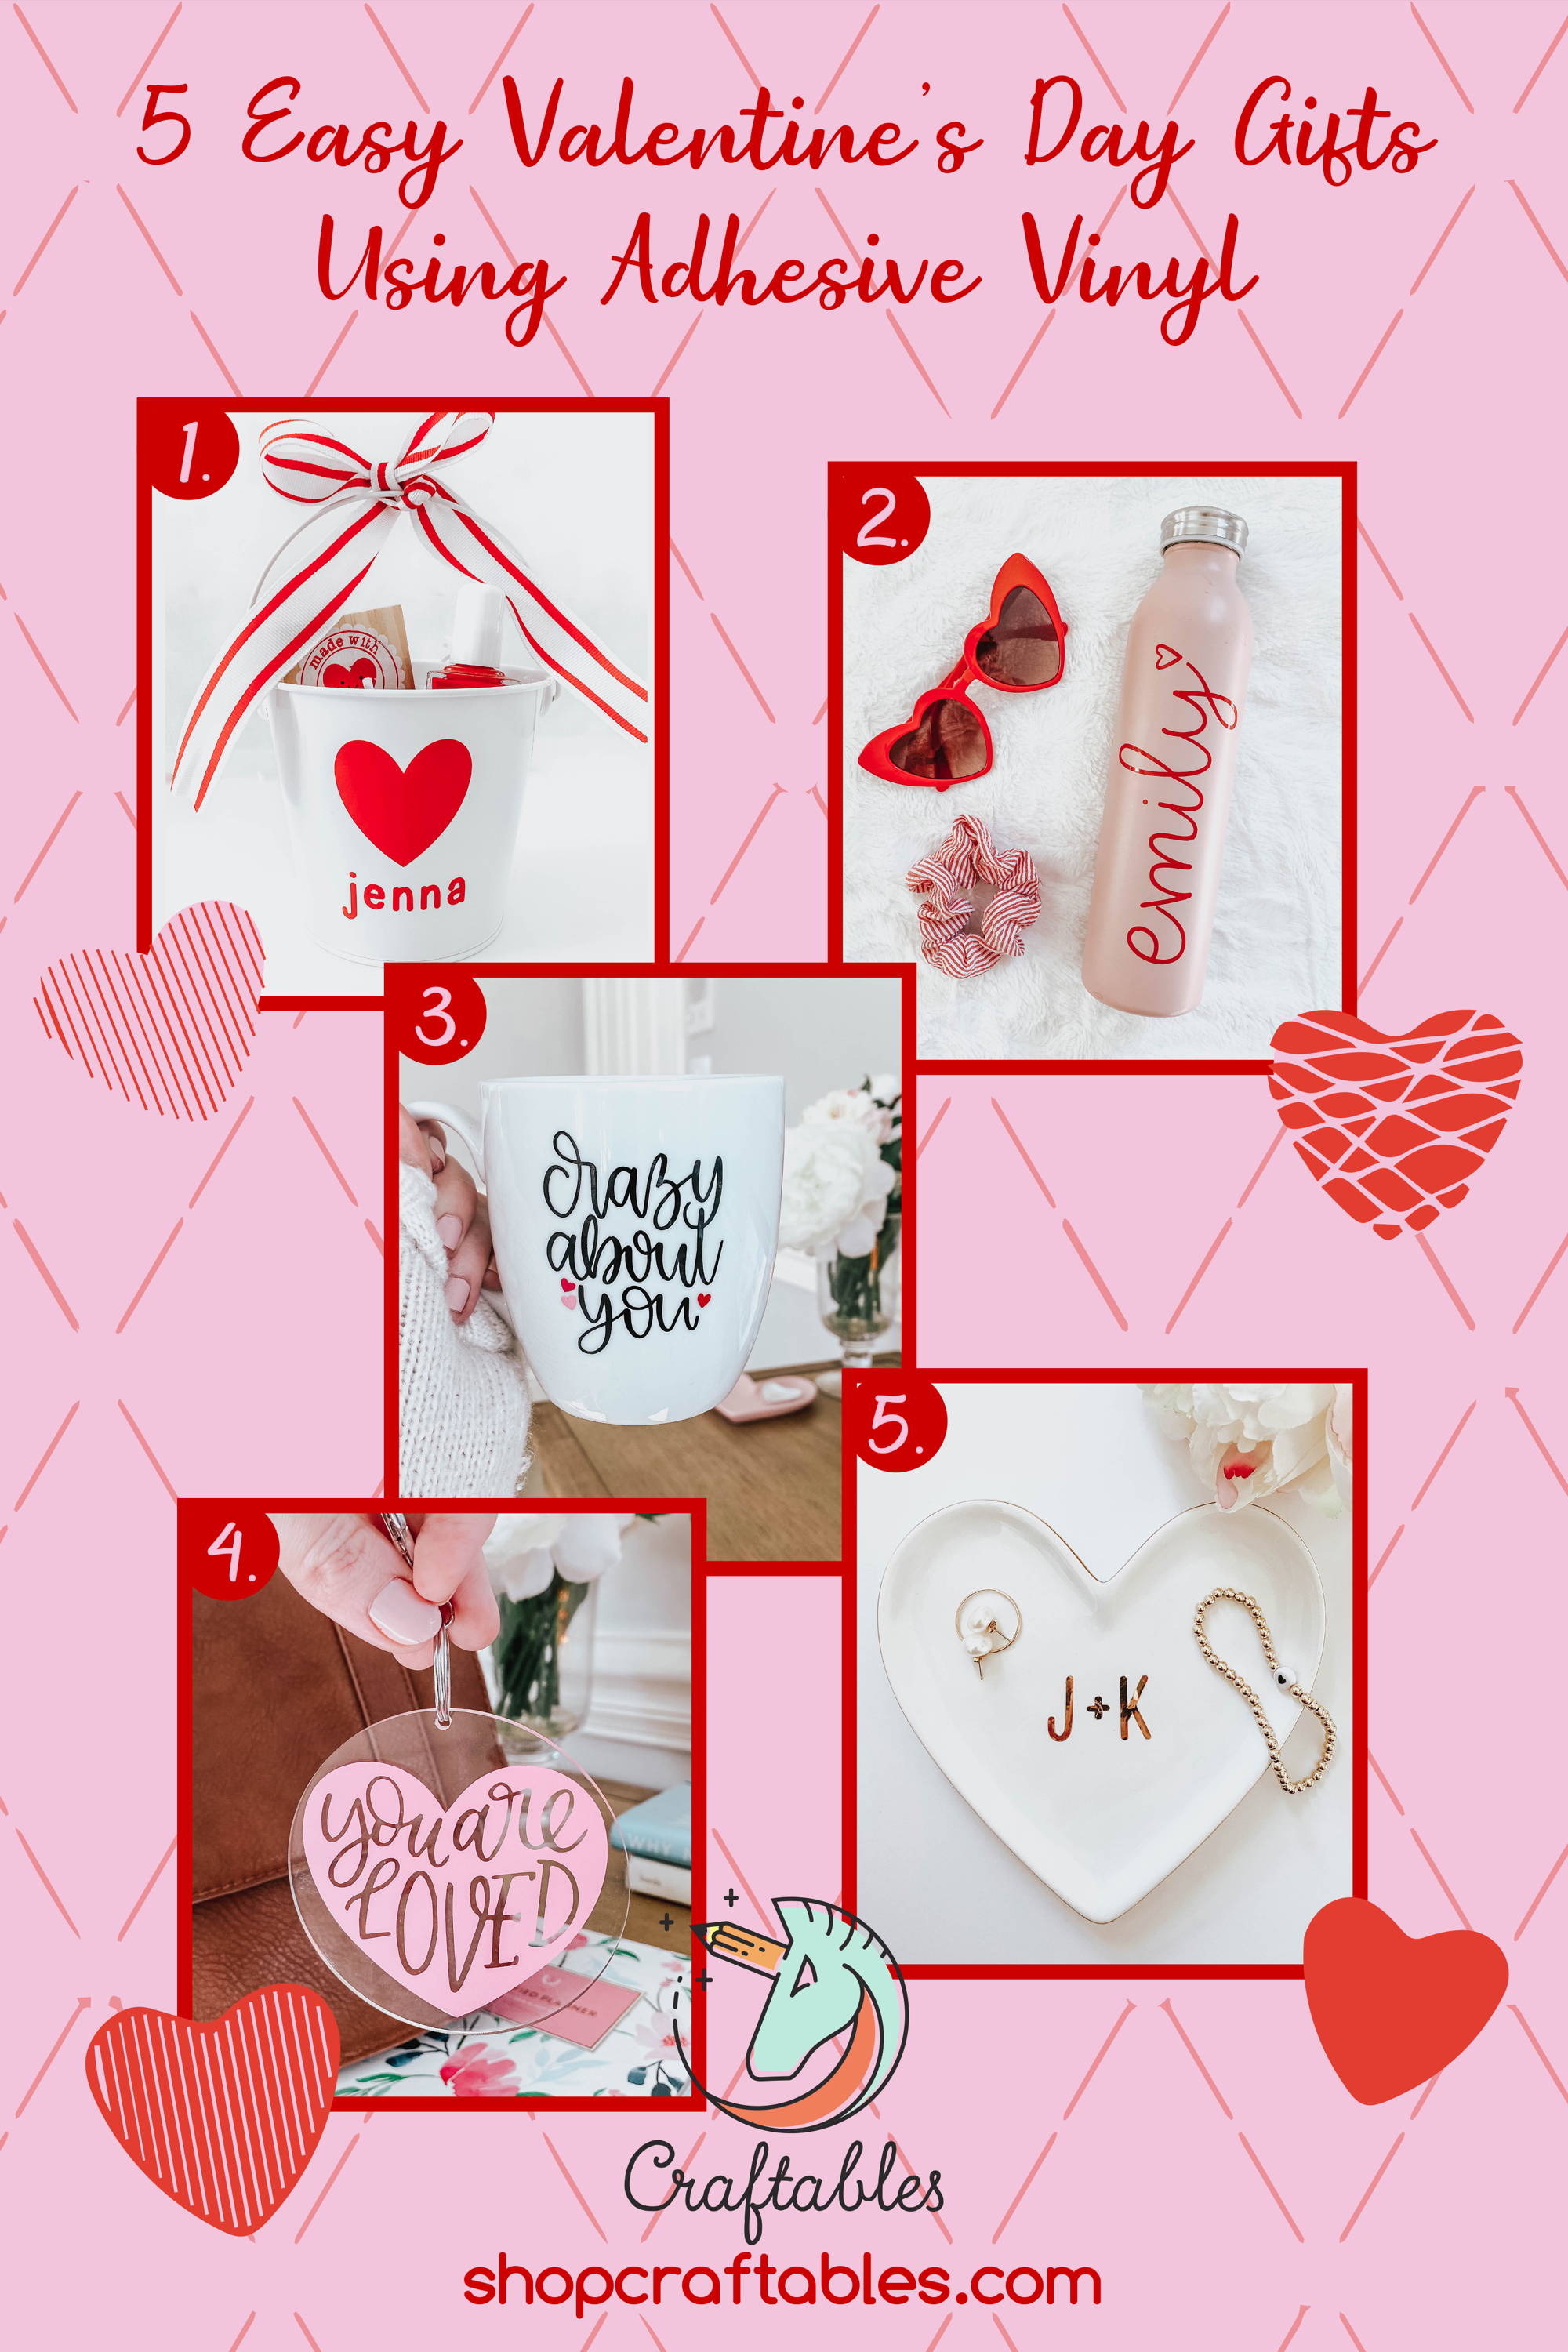 Stickershop Unlimited  Valentines vinyl ideas, Cricut valentines projects,  Diy valentines gifts